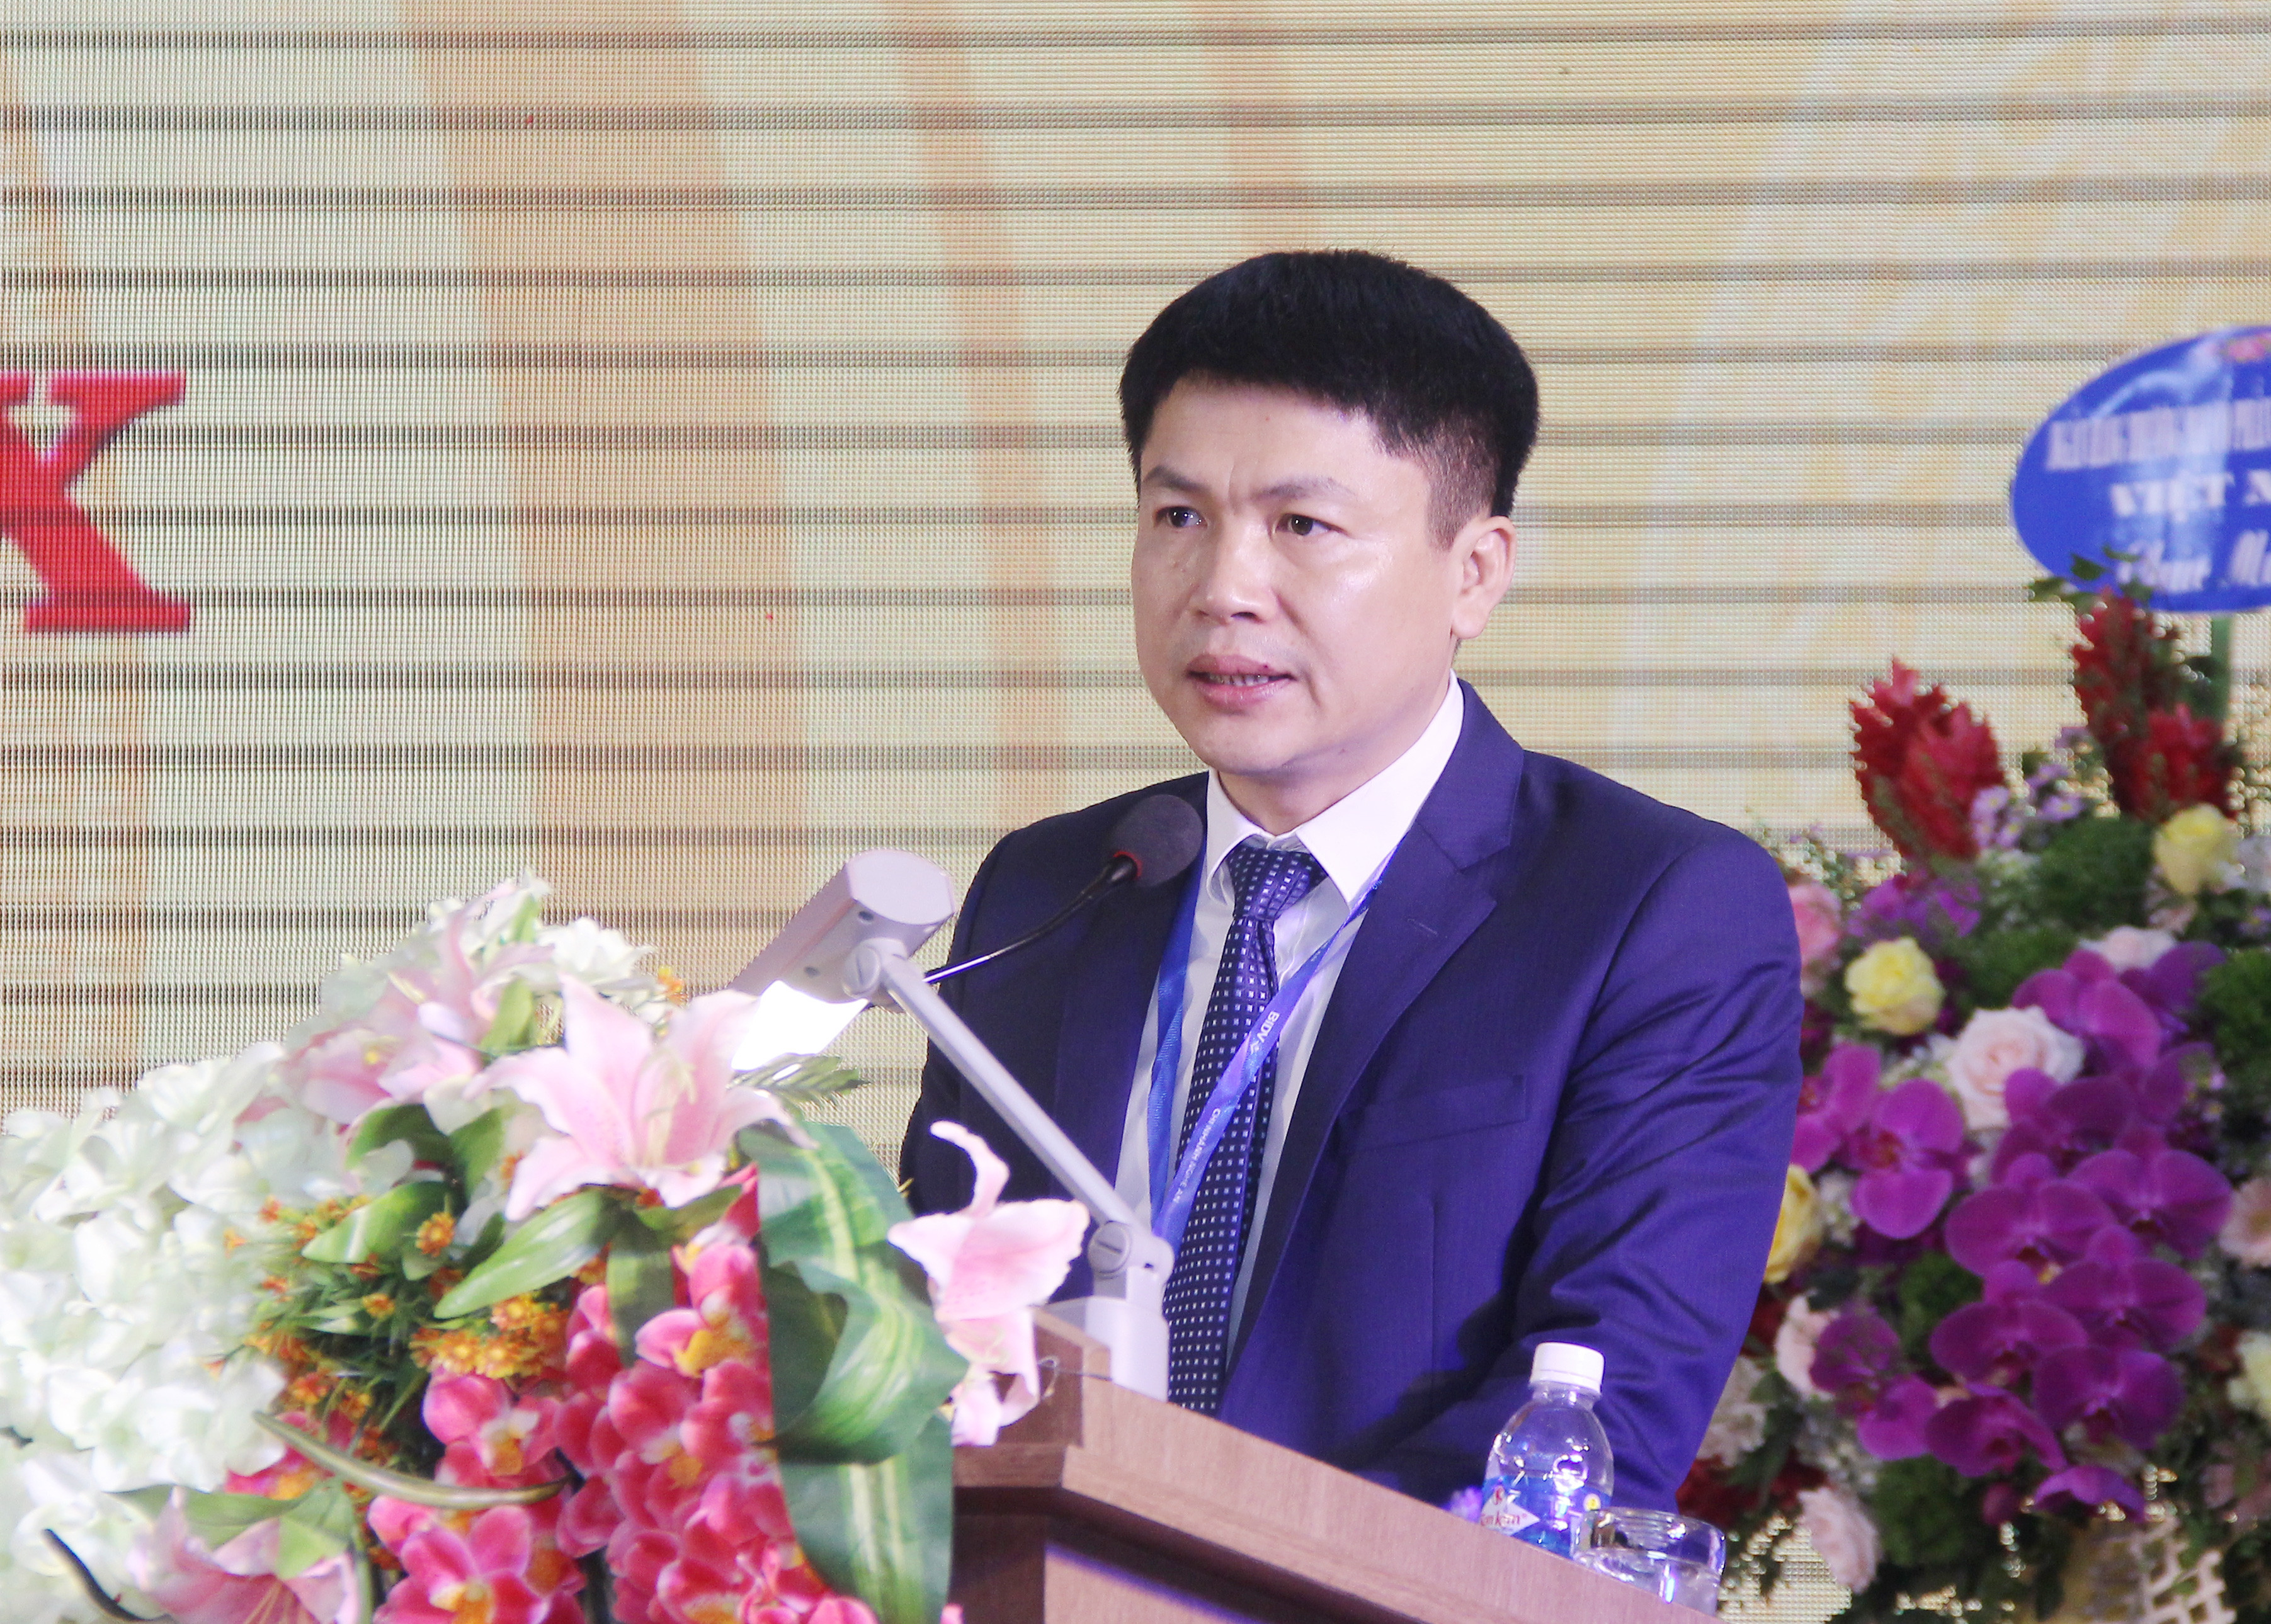 Đồng chí Trần Minh Tính - Bí thư Đảng ủy ngân hàng nhiệm kỳ 2015 - 2020, Giám đốc Ngân hàng trình bày báo cáo chính trị tại đại hội. Ảnh: Mai Hoa